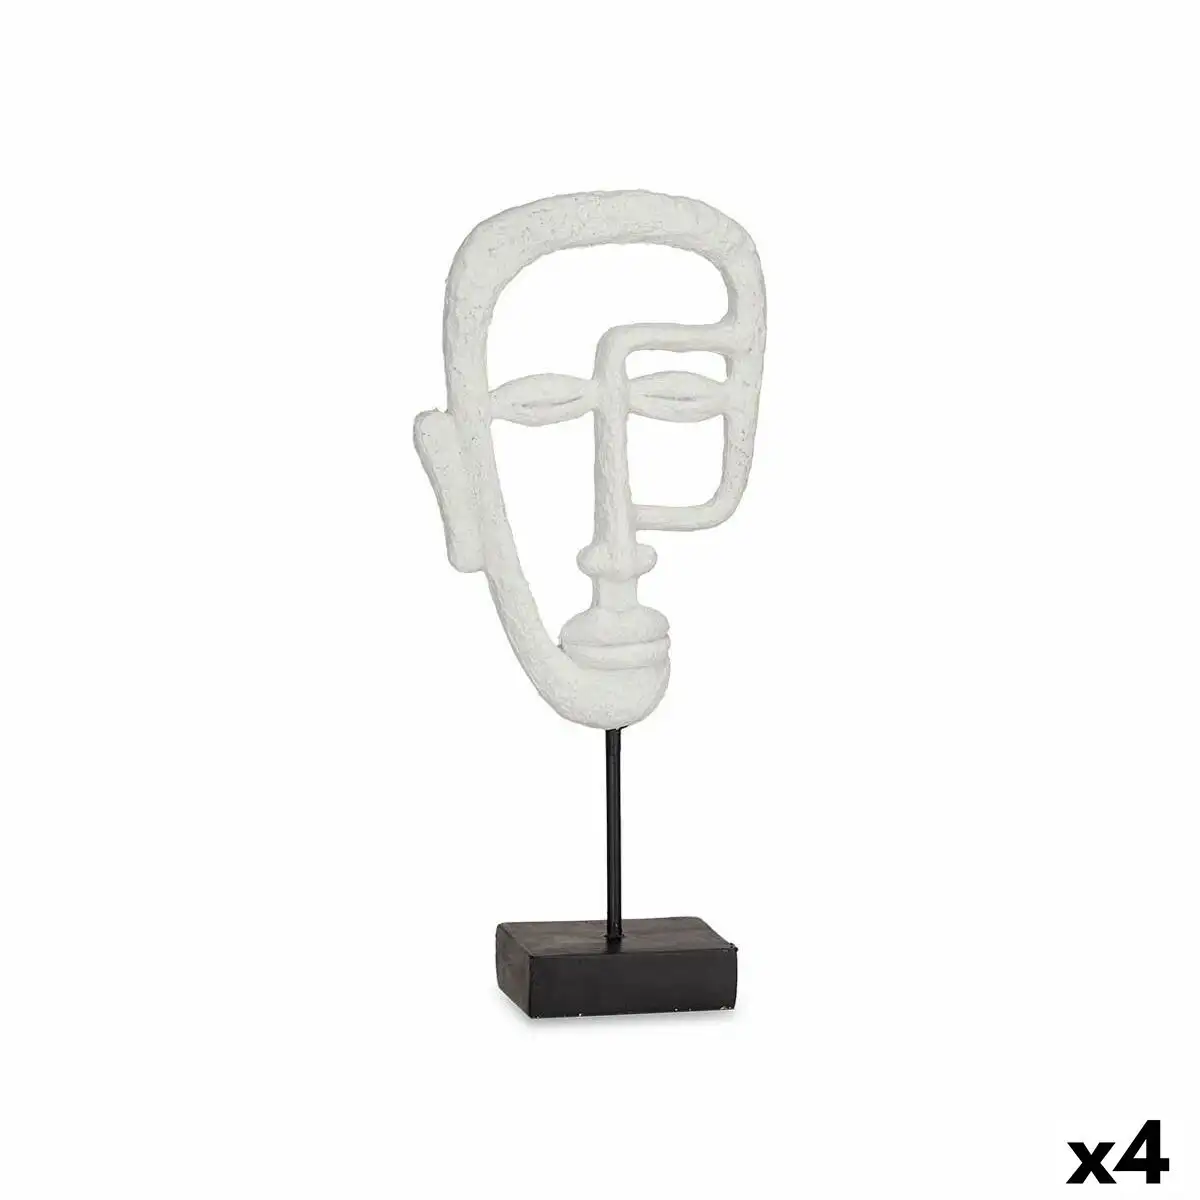 Figurine decorative visage blanc 19 5 x 38 x 10 5 cm 4 unites _4650. DIAYTAR SENEGAL - L'Artisanat à Portée de Clic. Découvrez notre boutique en ligne pour trouver des produits uniques qui célèbrent la créativité et l'artisanat sénégalais.